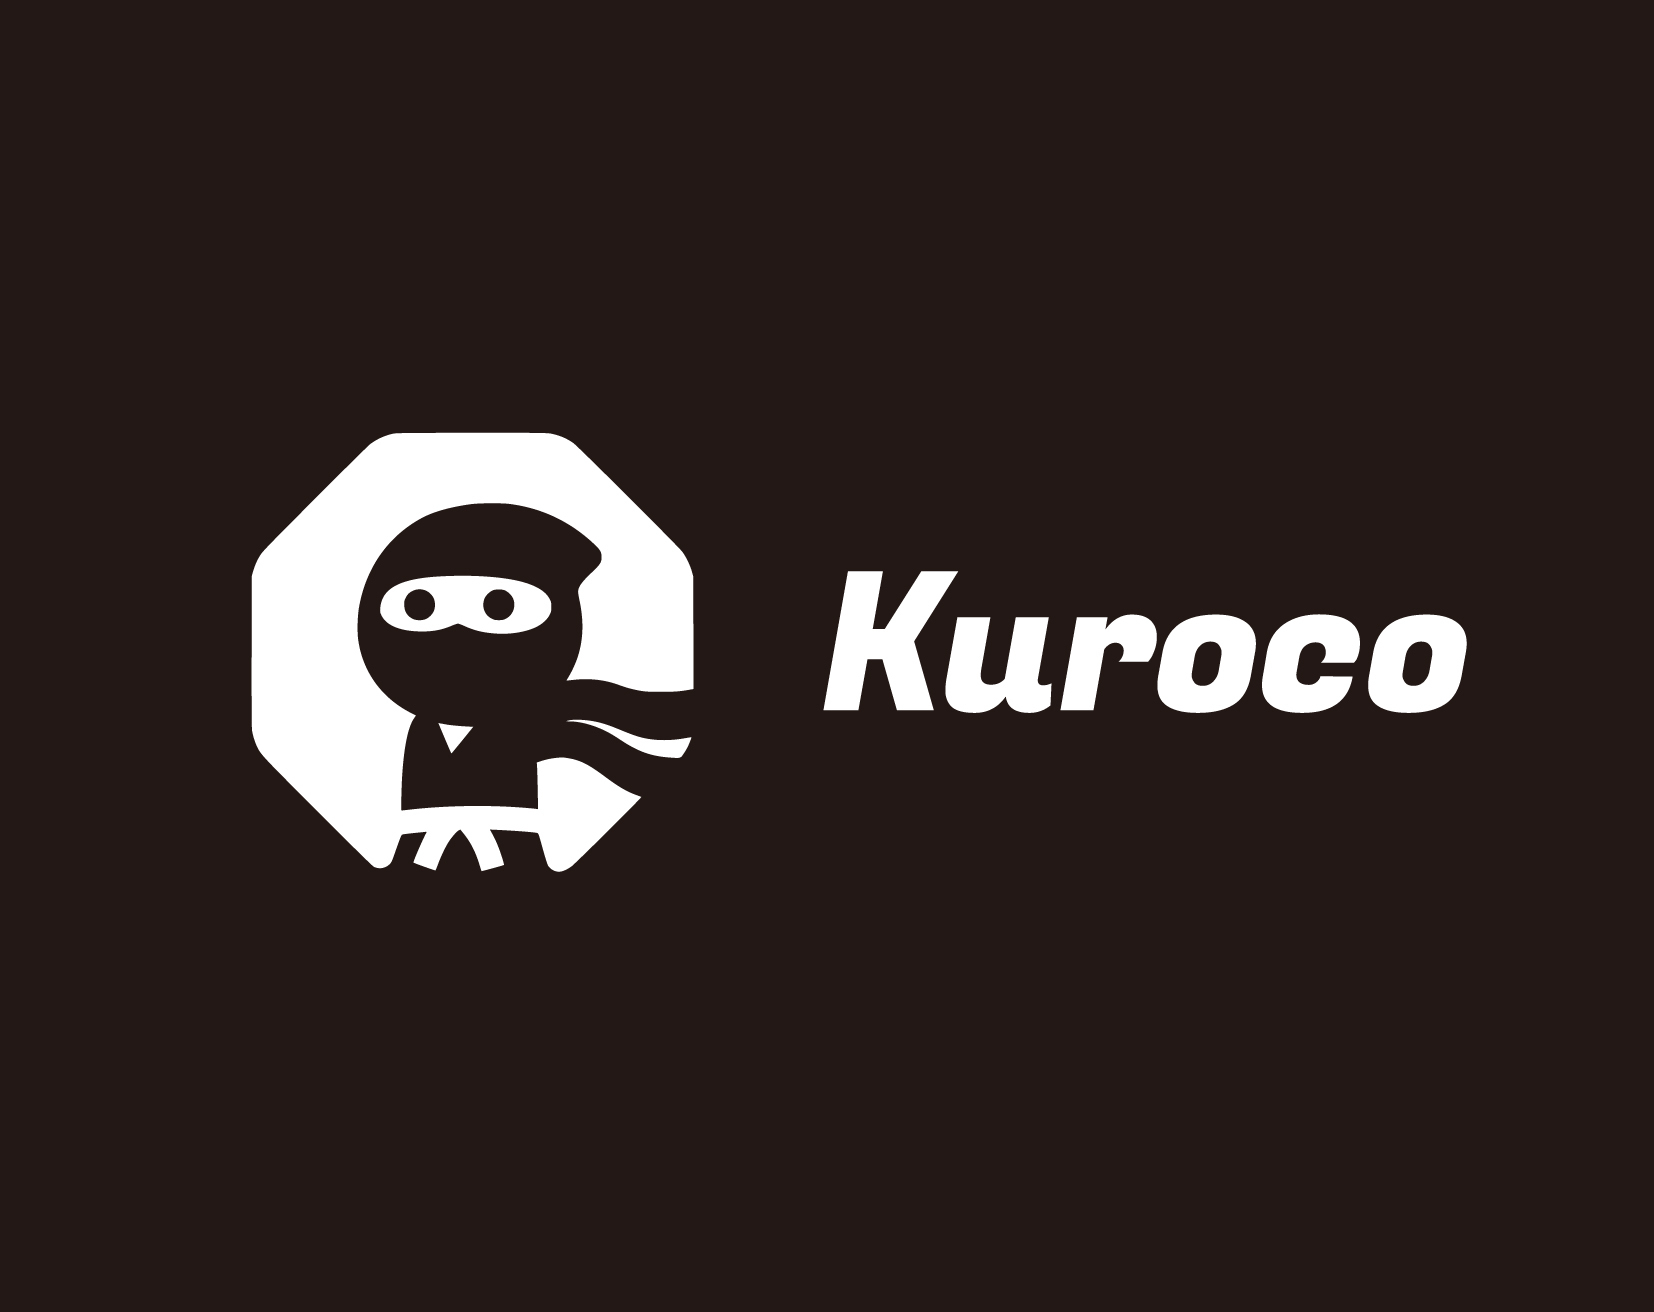 【PR】変化に強く、新たな領域を切り拓く新世代ヘッドレスCMS「Kuroco」を導入し未来のWeb環境を構築せよ